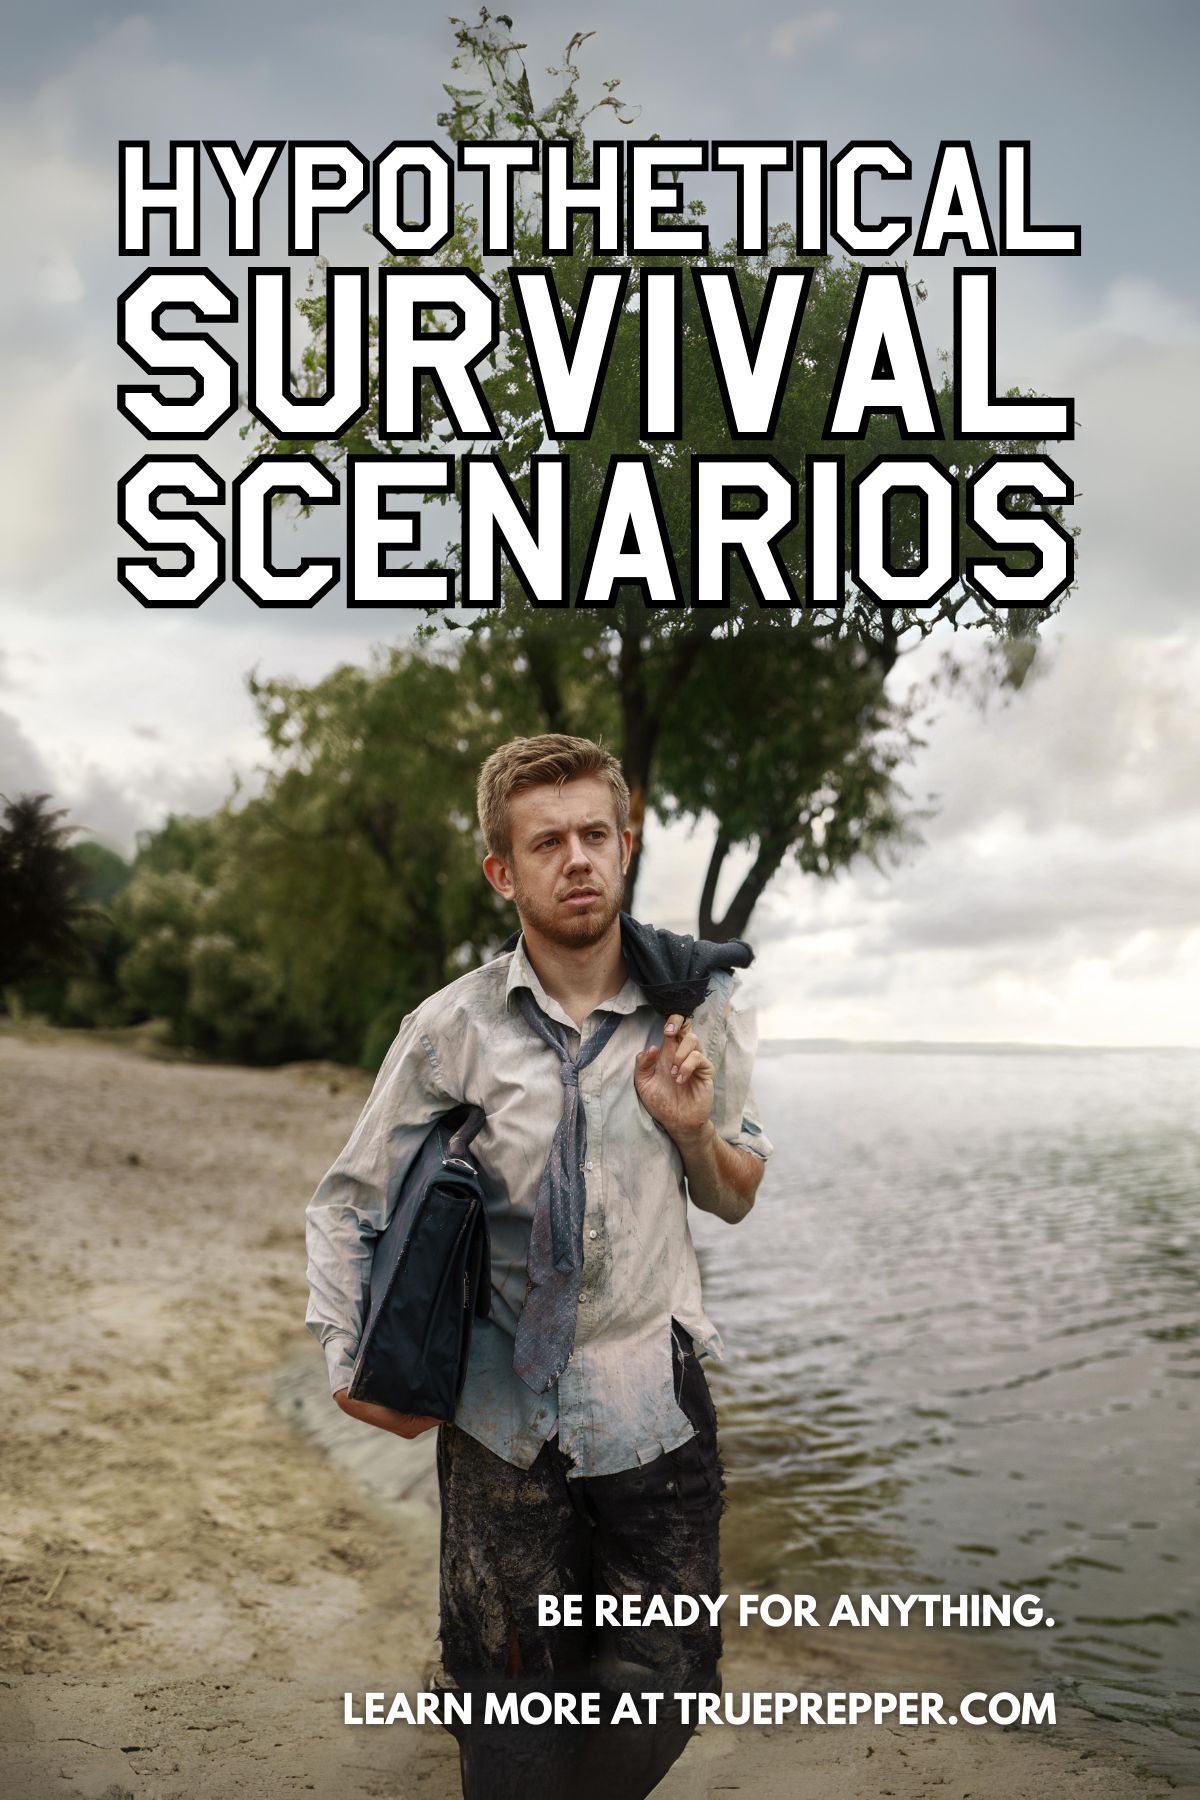 Hypothetical Survival Scenarios